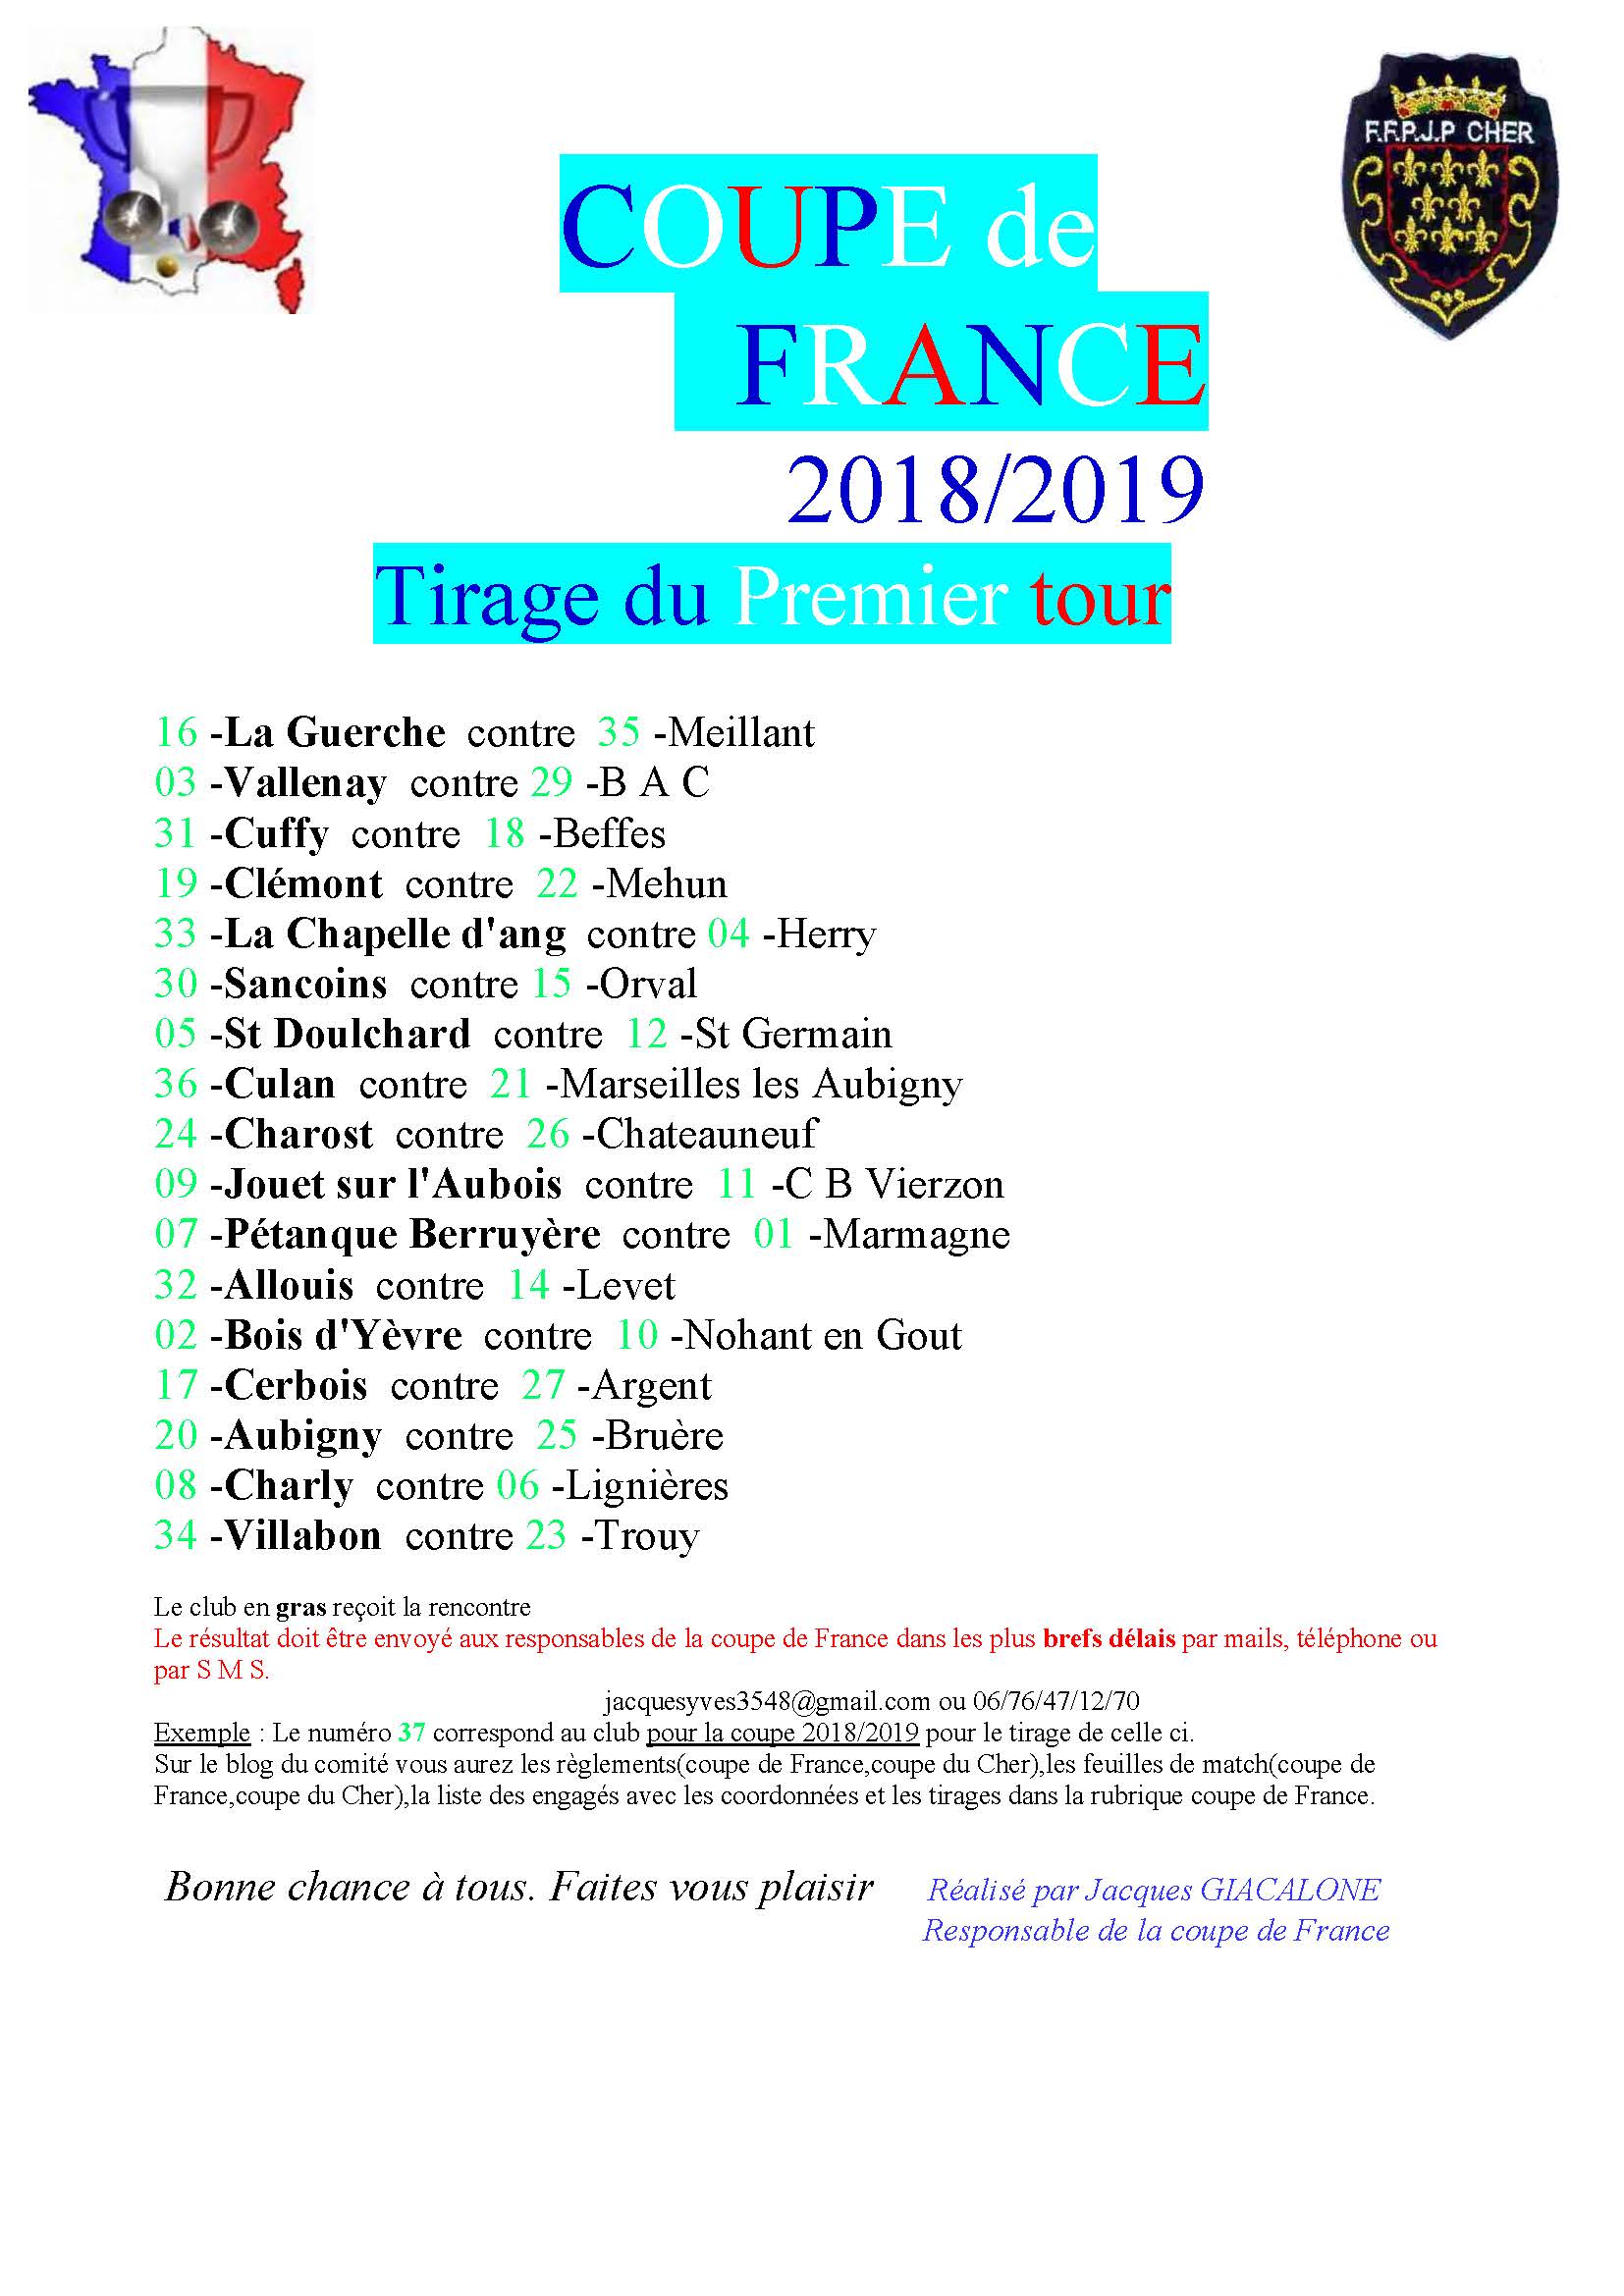 COUPE DE FRANCE 2018/2019  -  Tirage du premier tour